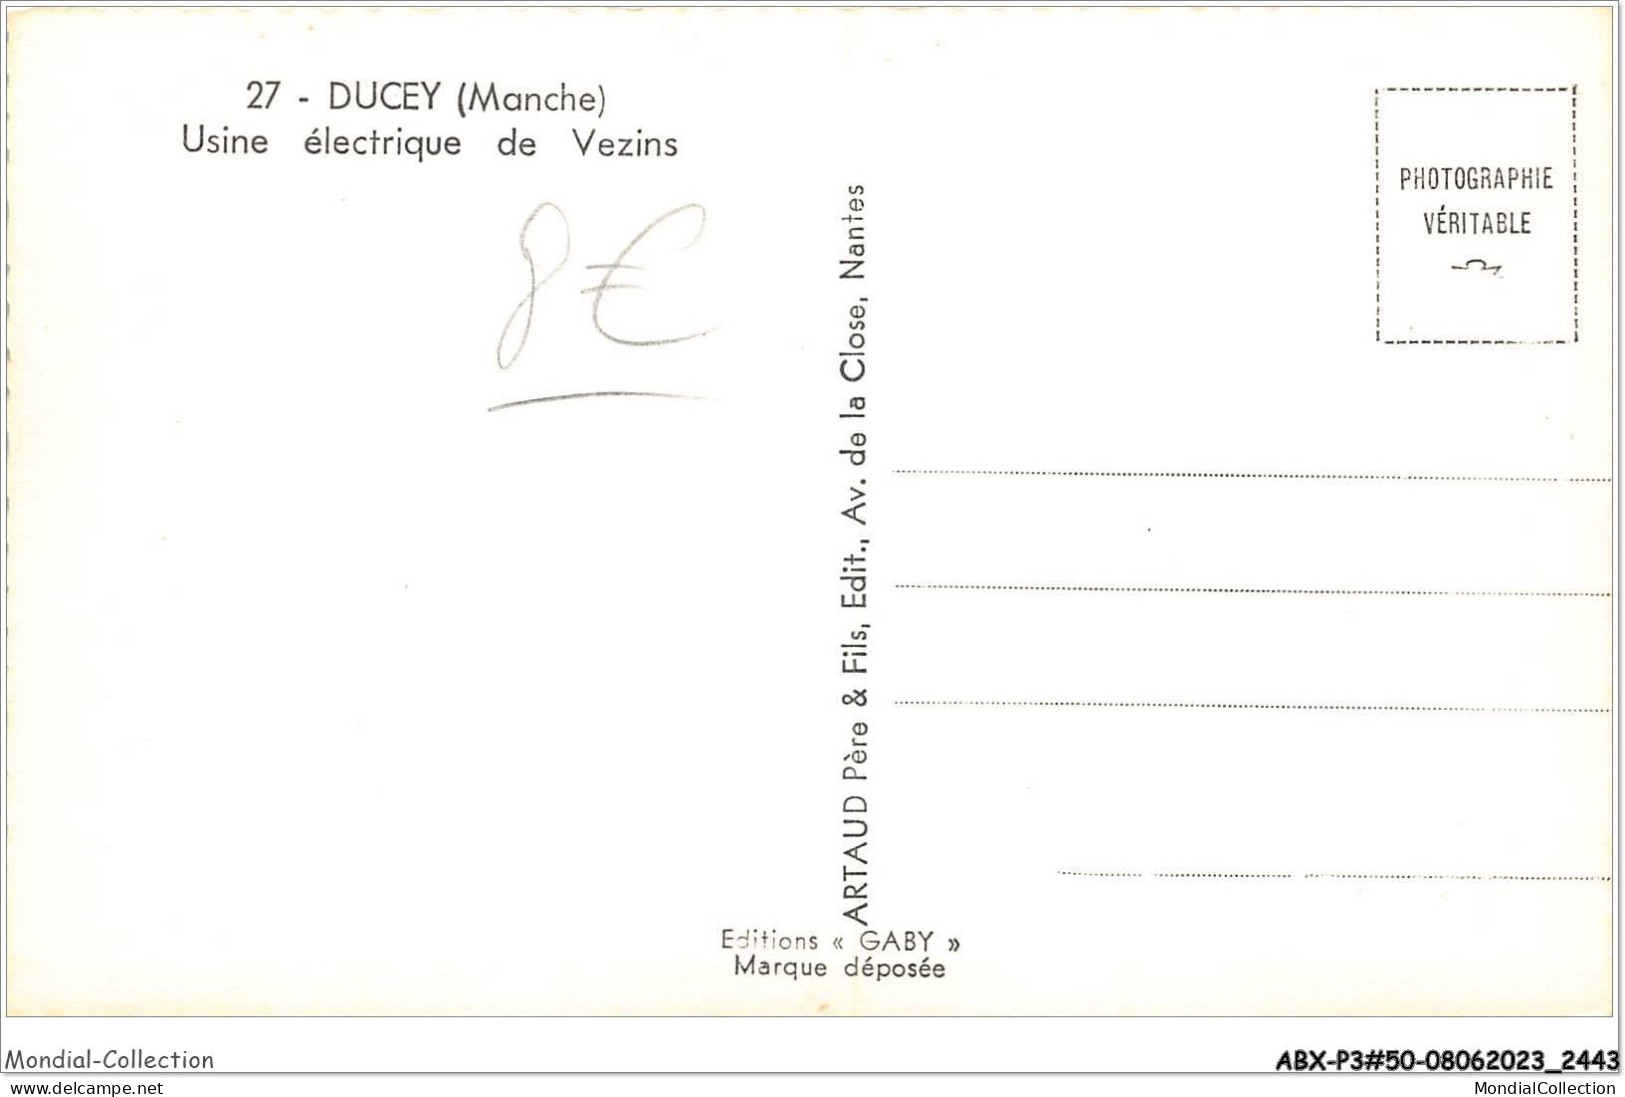 ABXP3-50-0210 - DUCEY - Usine Electrique De Vezins - Ducey